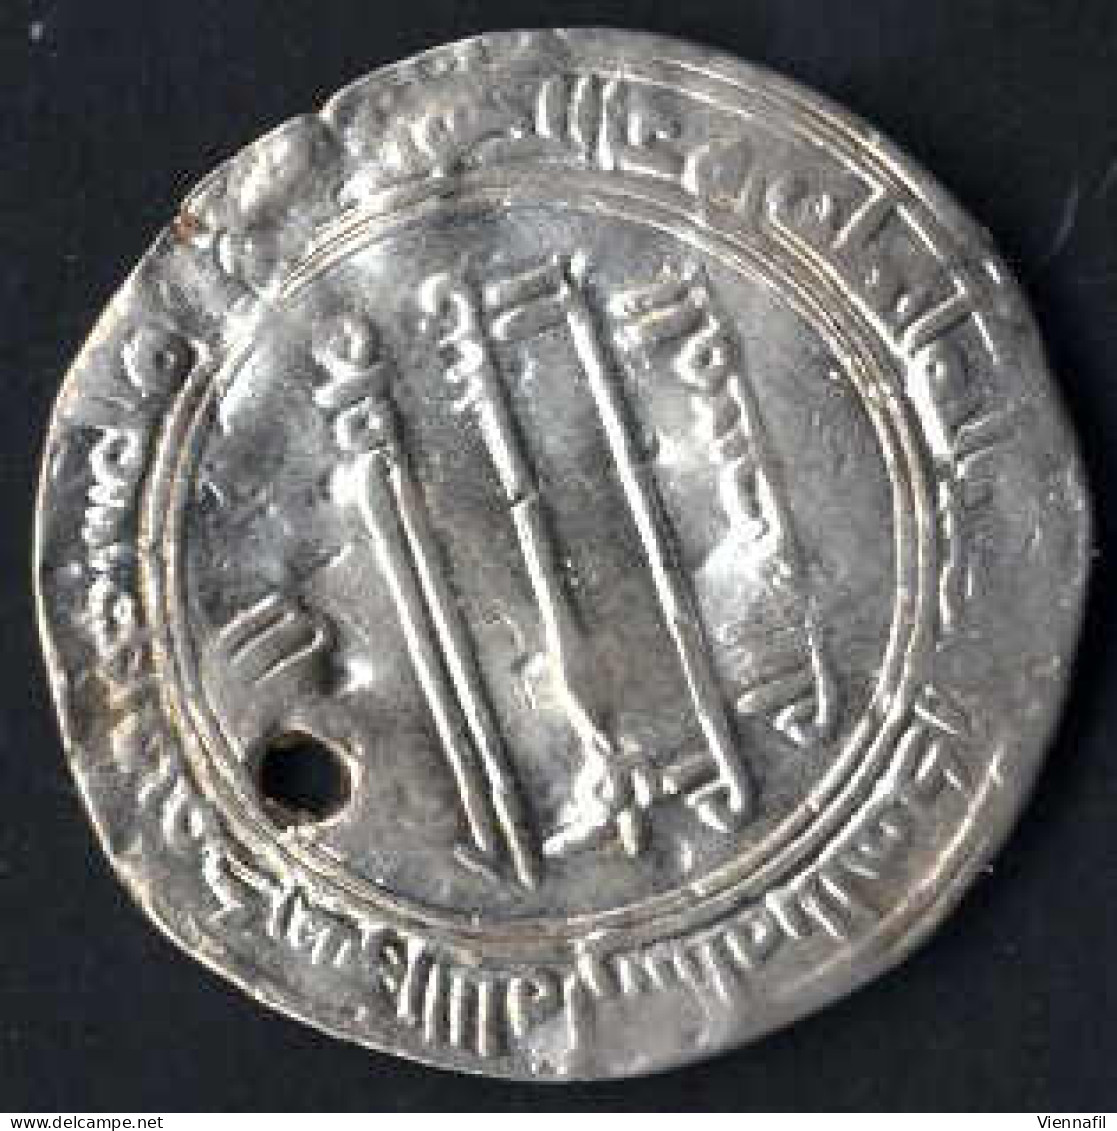 218-255AH 838-869, Dirham Silber, verschiedene Jahre und Münzstätten, sehr gut+ Loch, 6 Stück